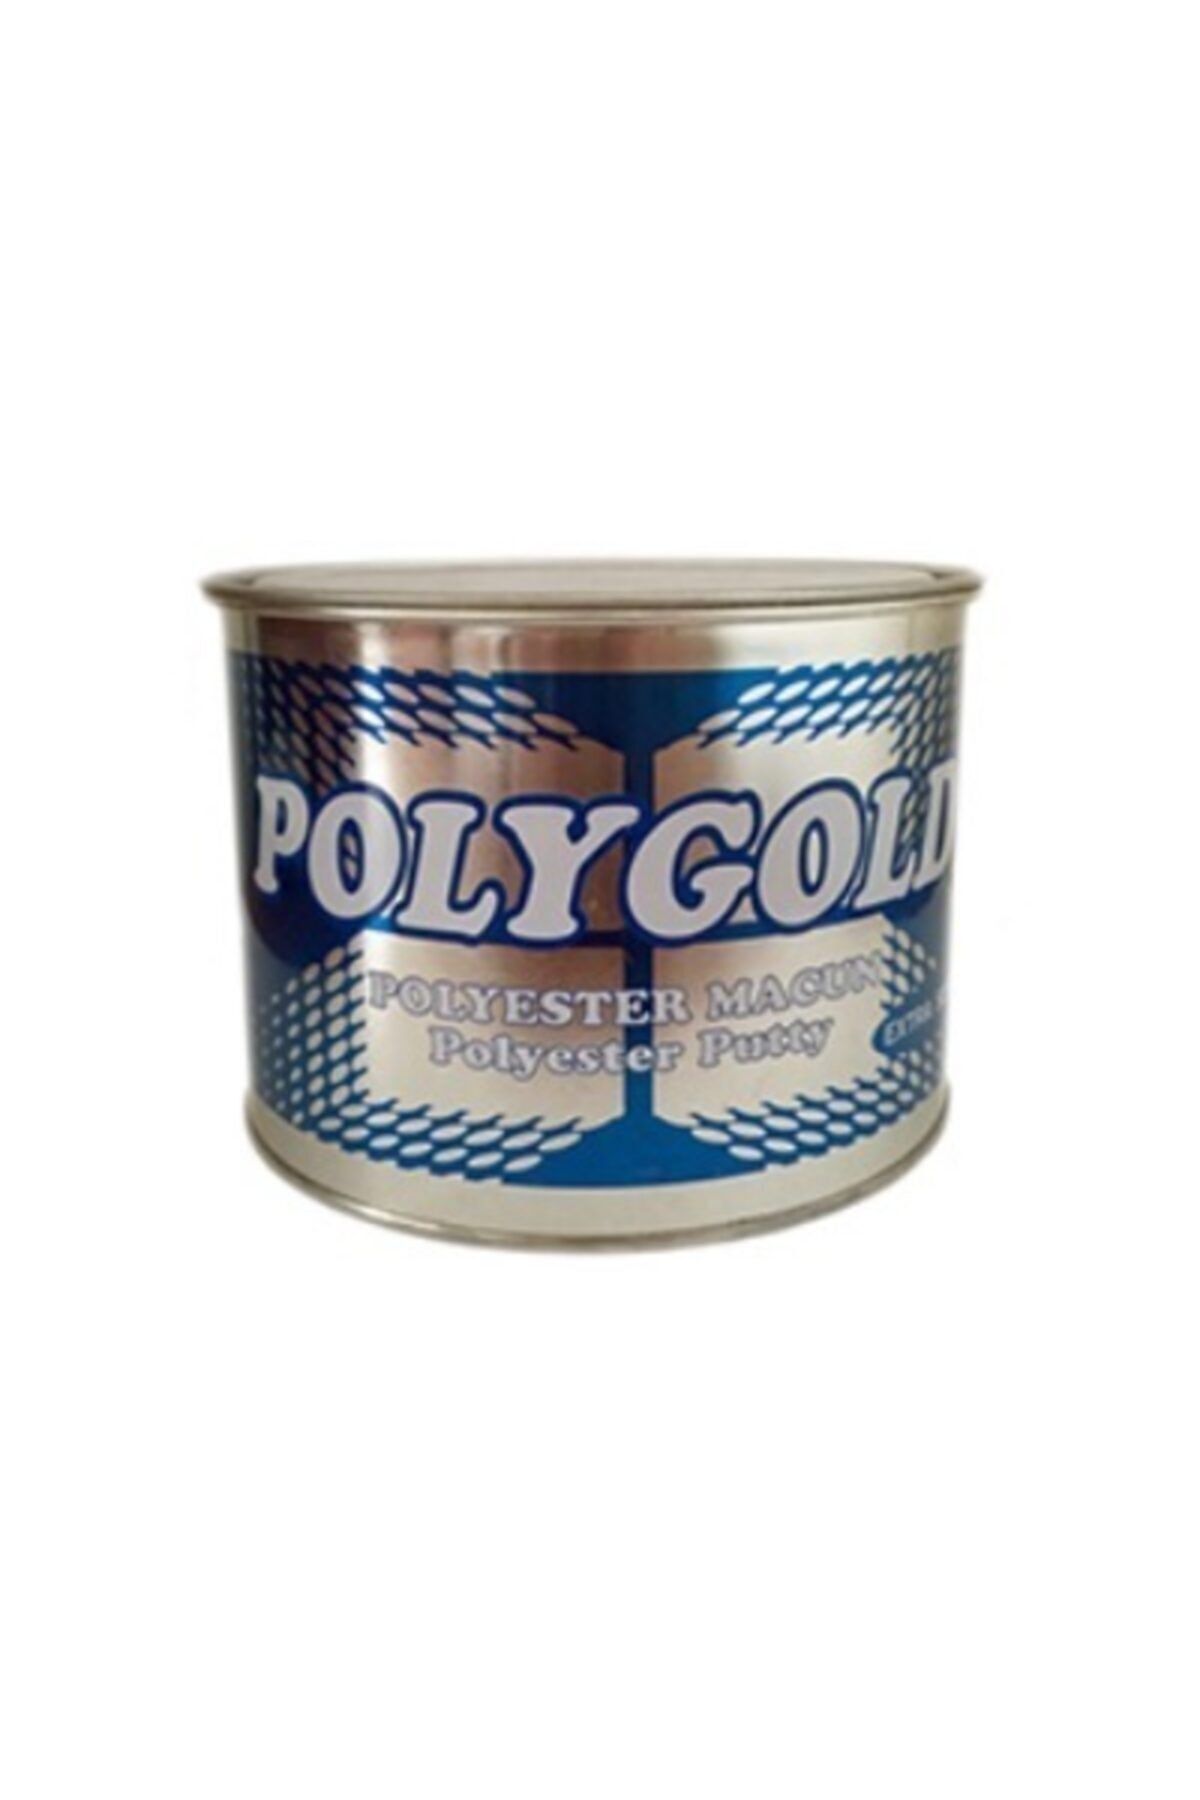 Polygold Polyester Çelik Macun 500 gr